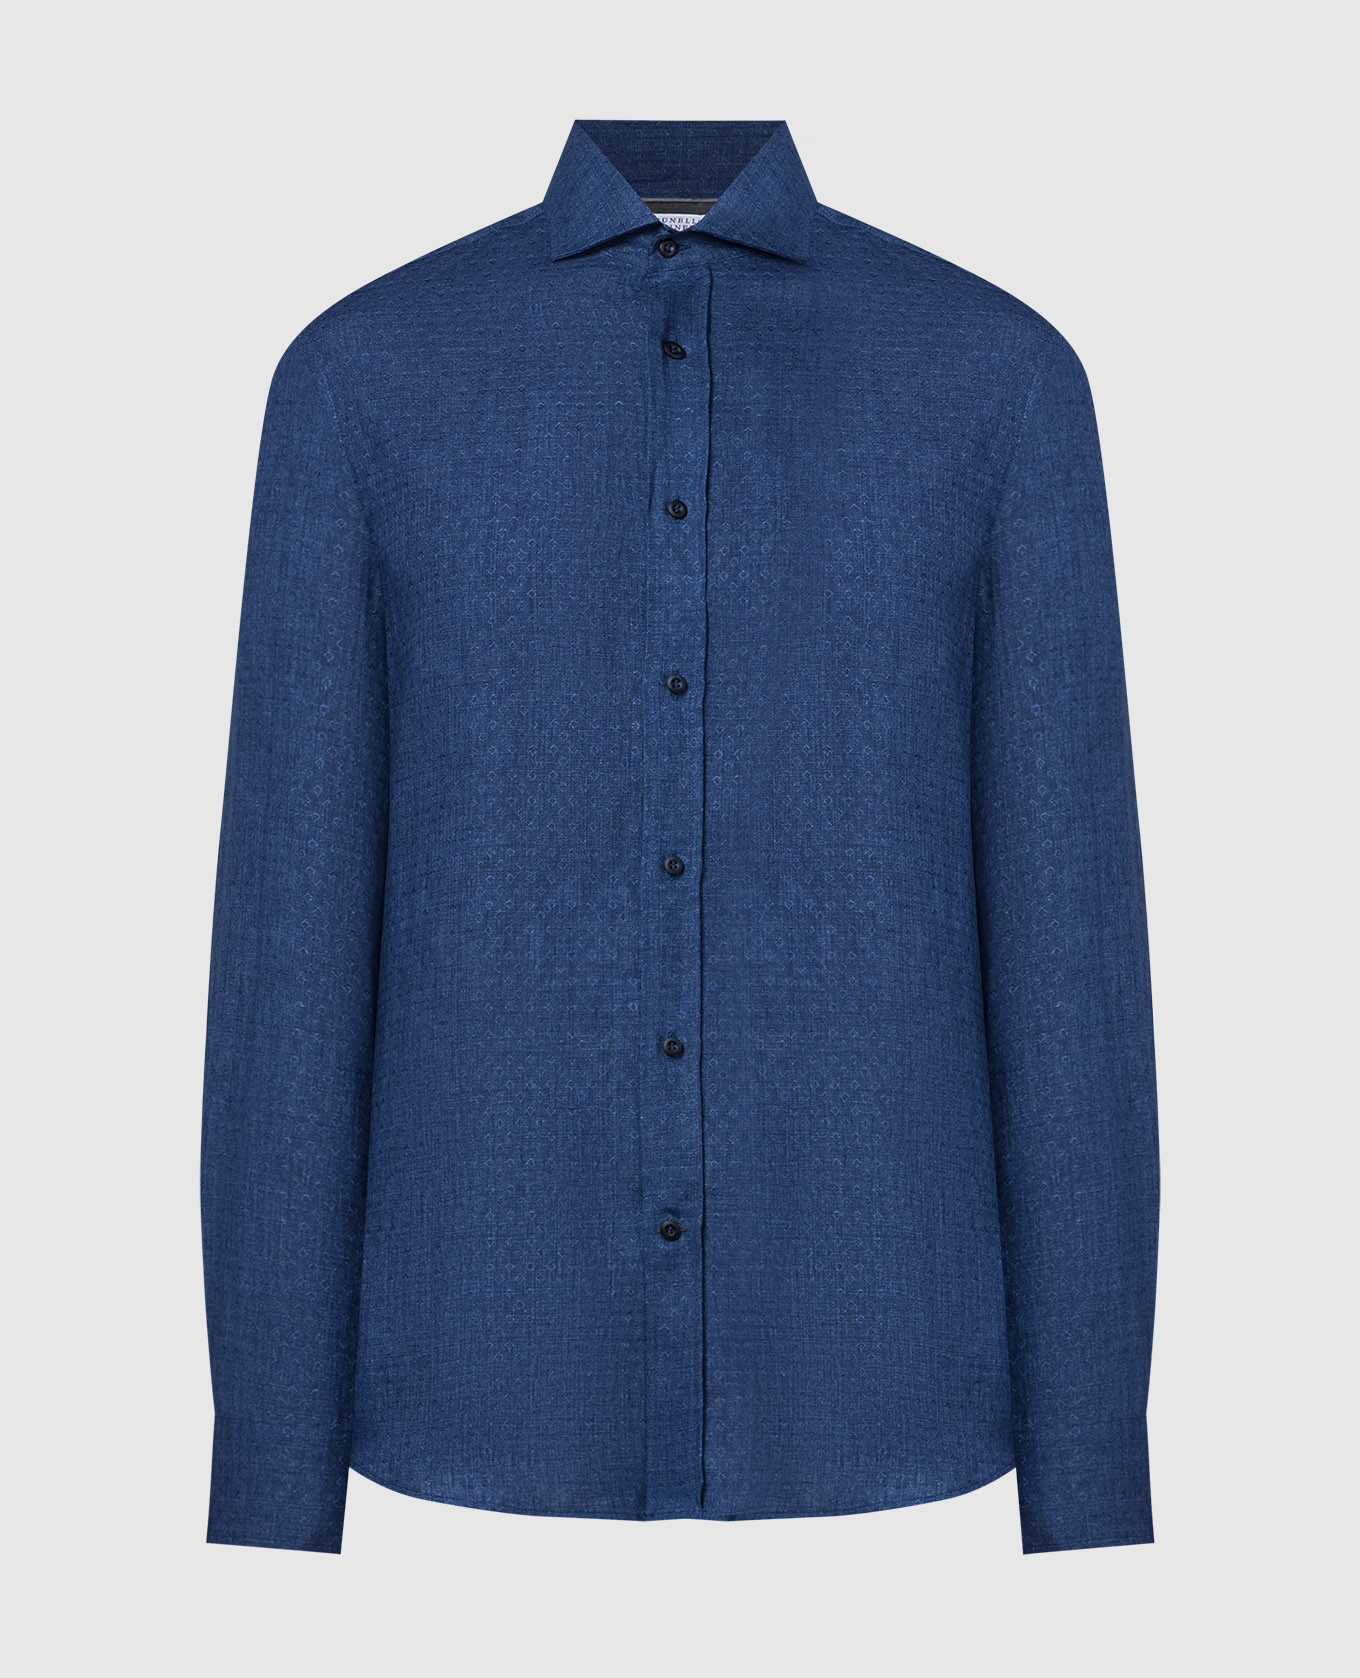 Blue patterned linen shirt